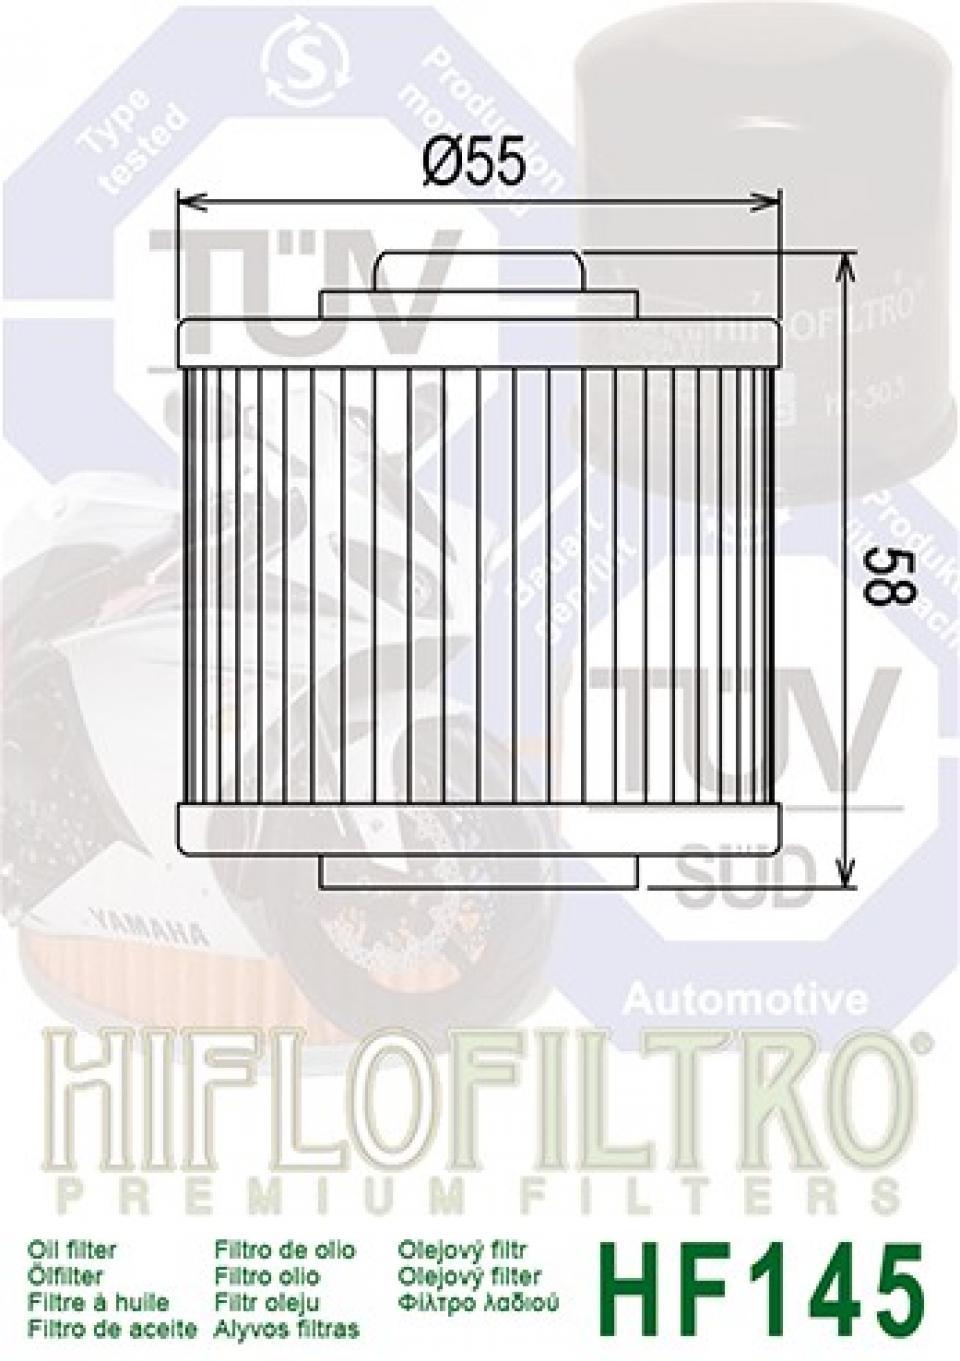 Filtre à huile Hiflofiltro pour Quad Yamaha 700 YFM R 2006 à 2009 Neuf